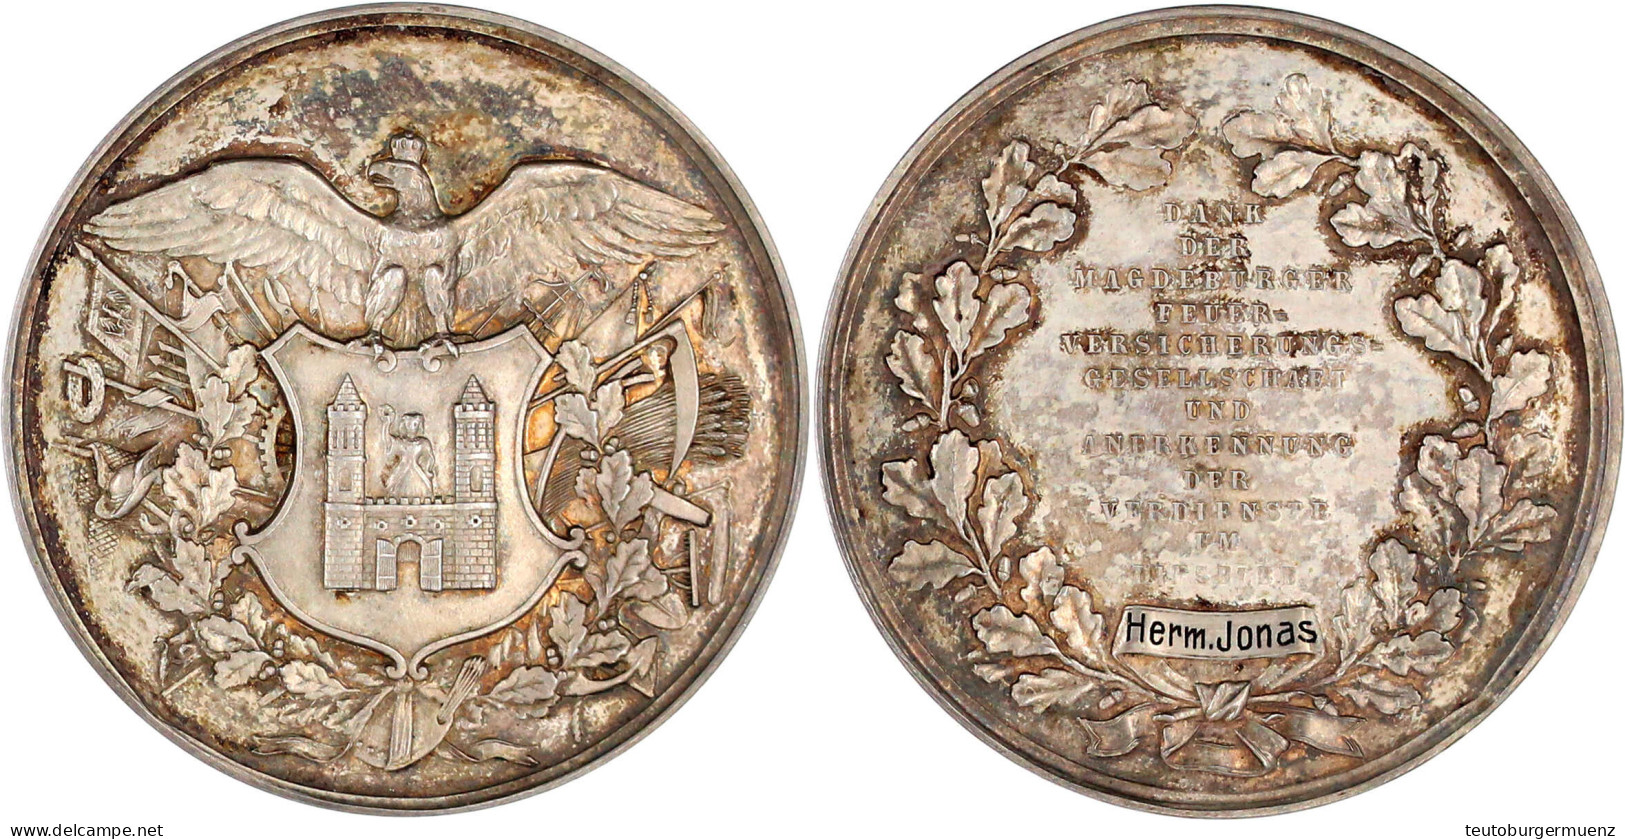 Silbermedaille 1914 Für Agent Hermann Jonas In Hennen Am 25. Januar. Dank Der Magdeburger Feuerversicherungsgesellschaft - Gold Coins